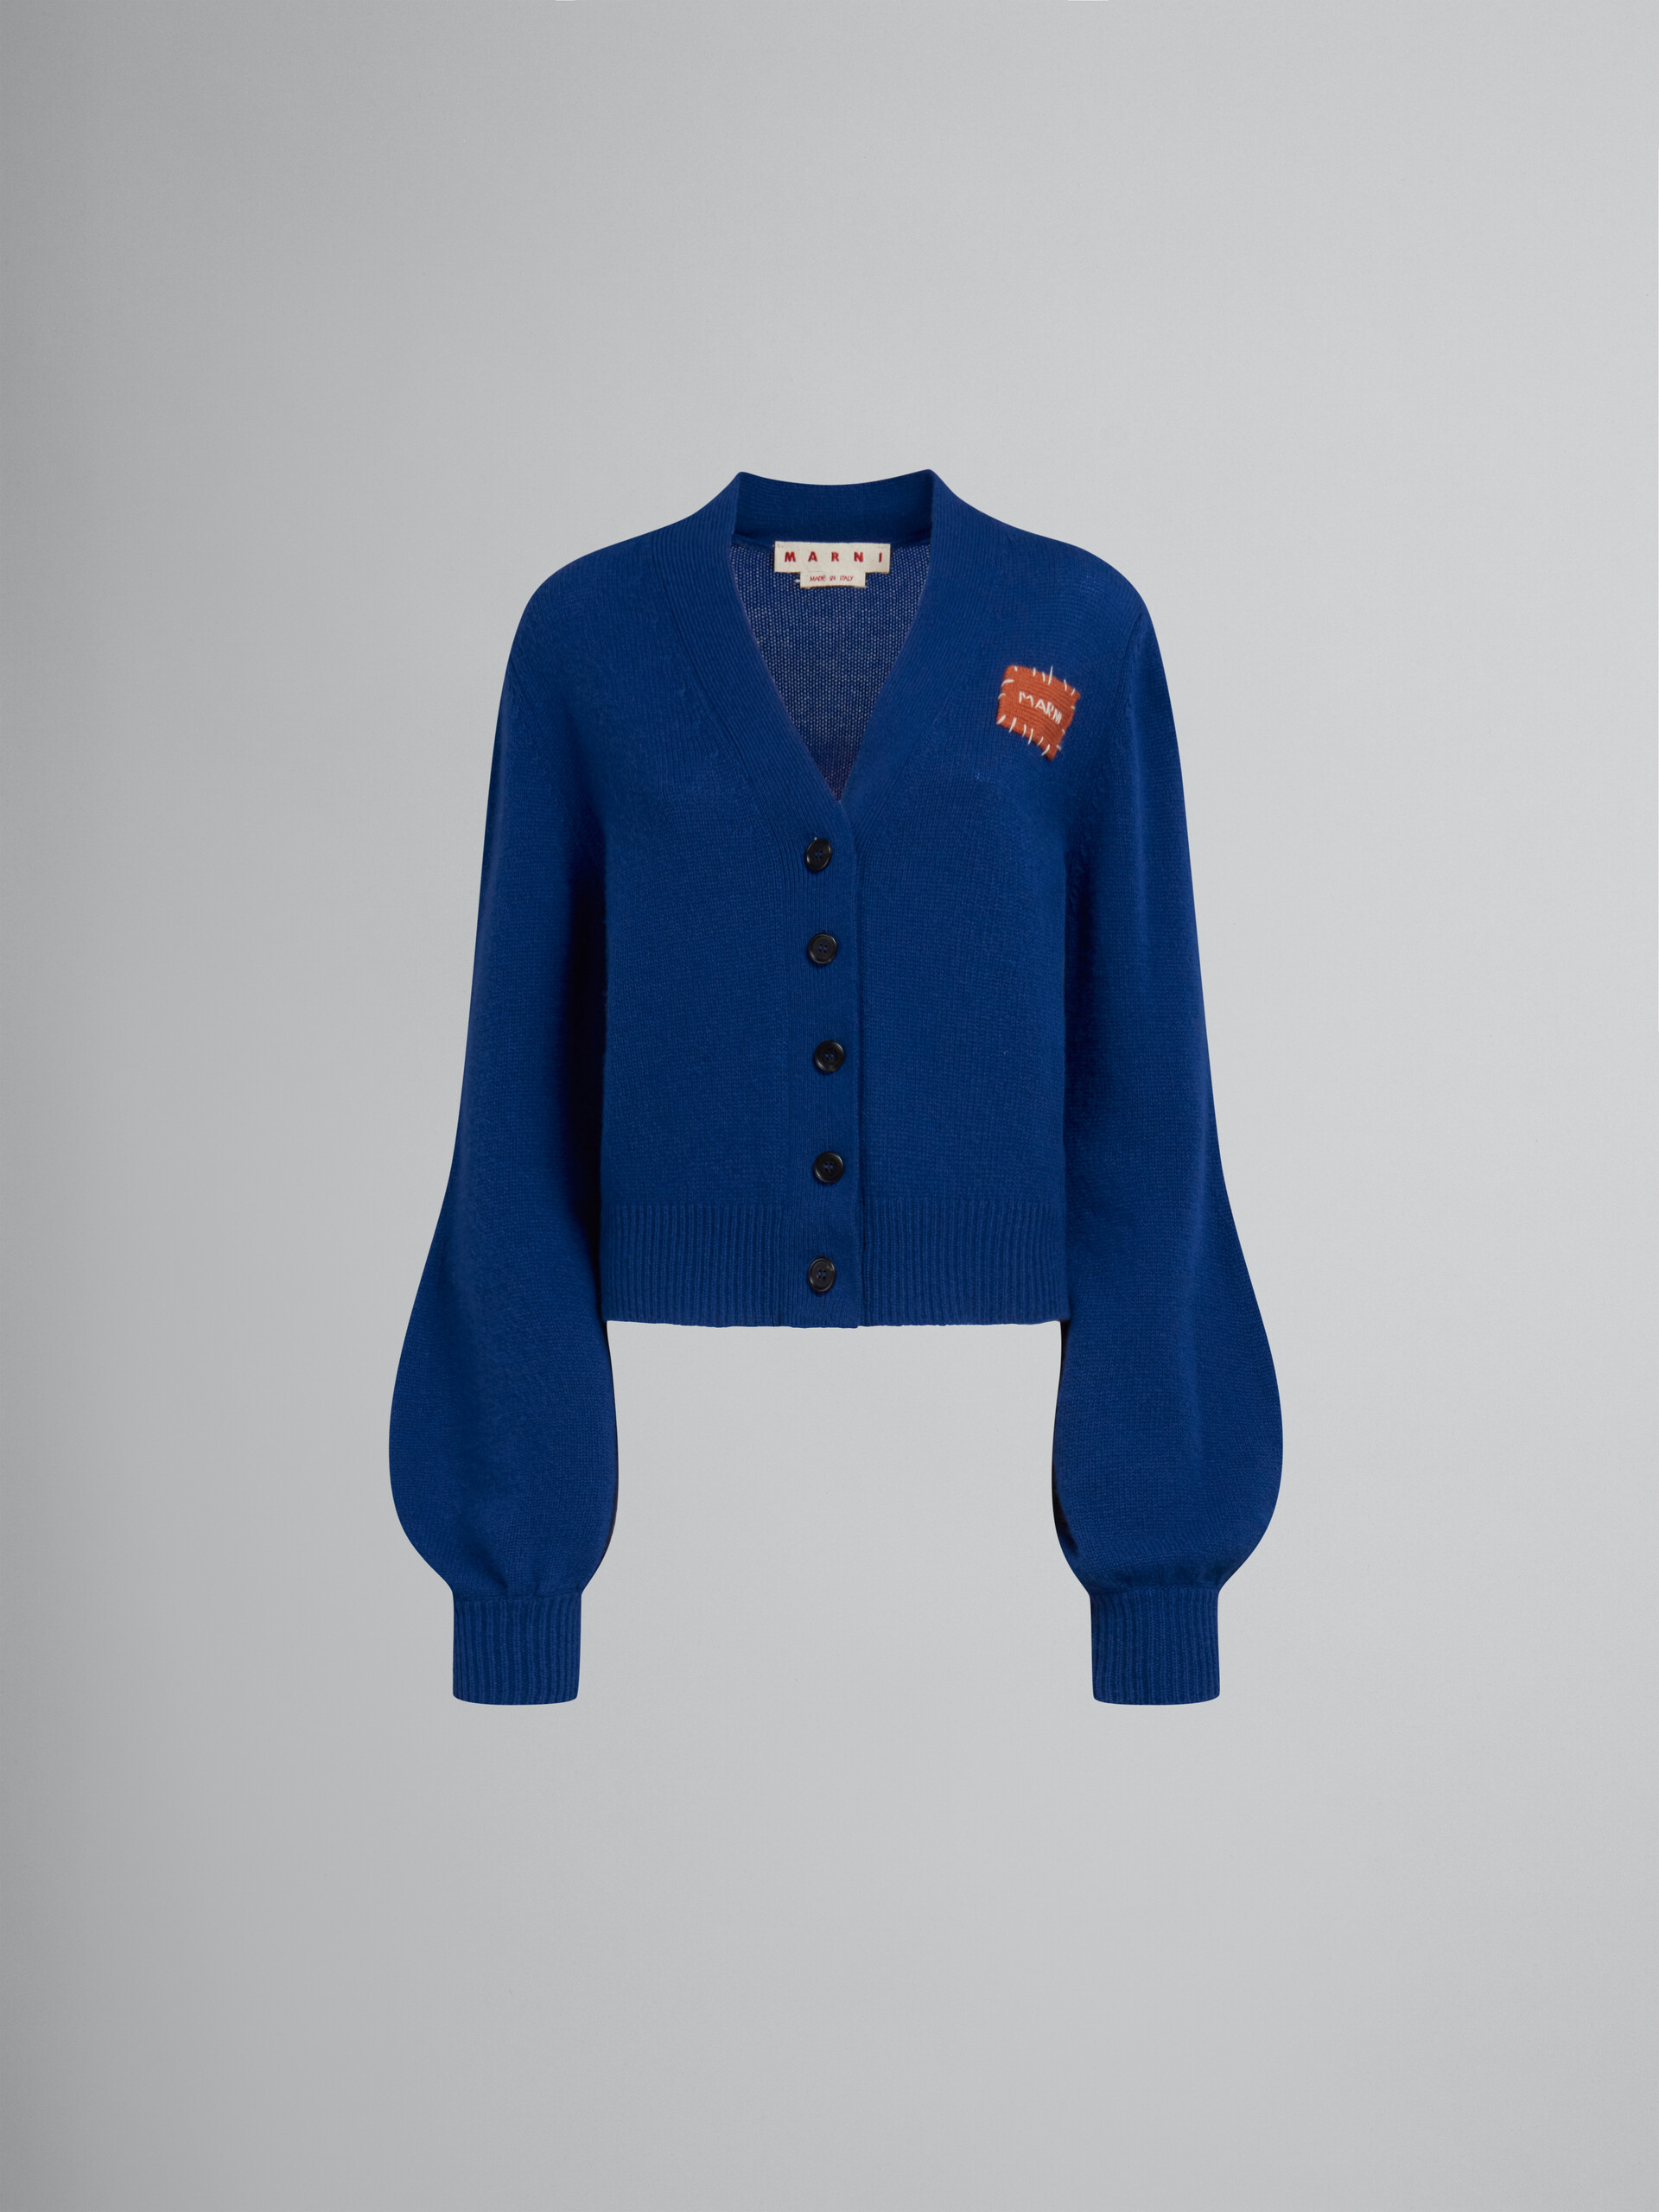 Cárdigan azul de cachemira con parche Marni efecto remiendo - jerseys - Image 1